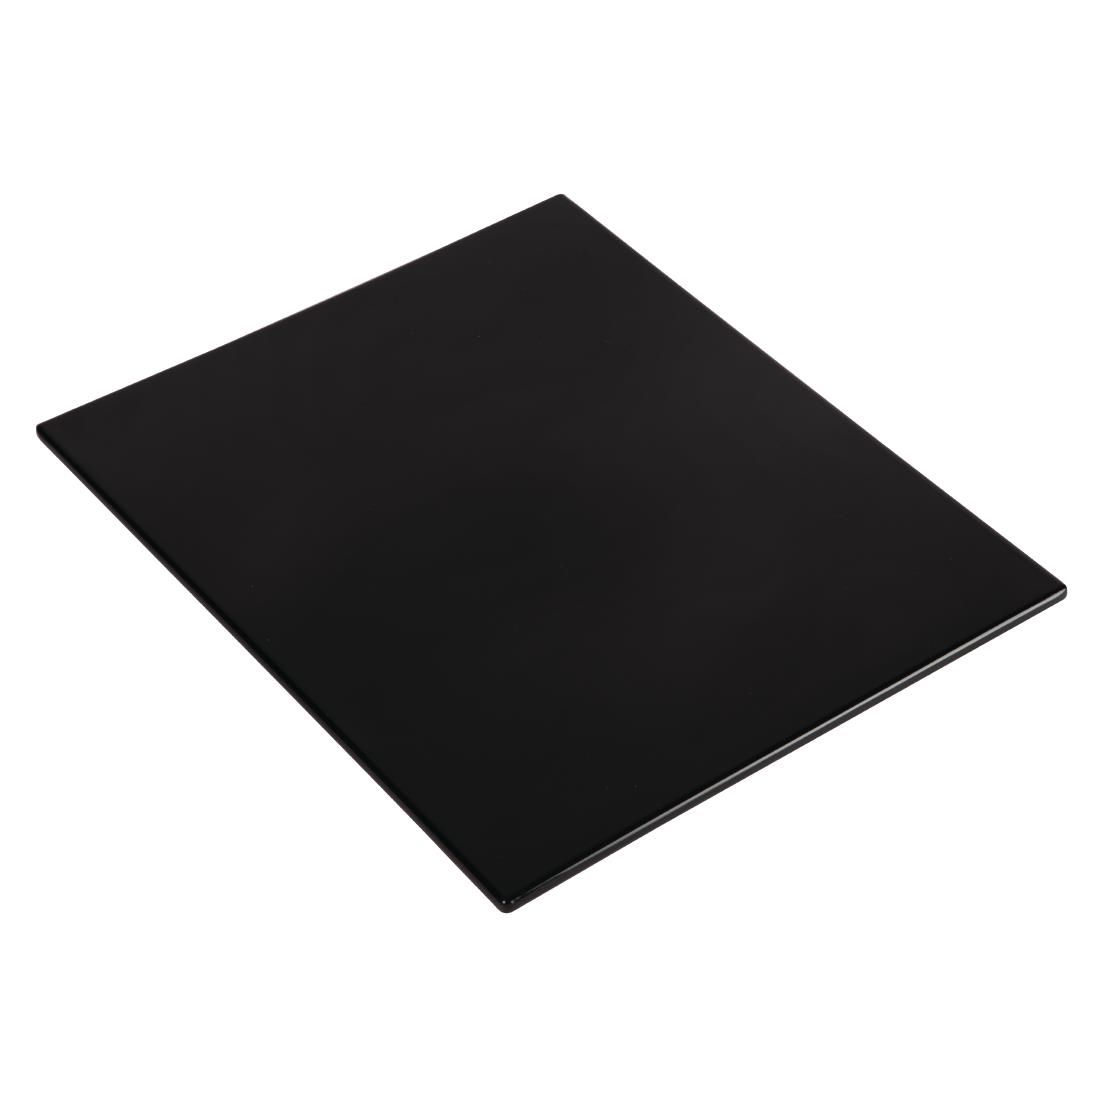 APS Zero Melamine Platter Black GN 1/2